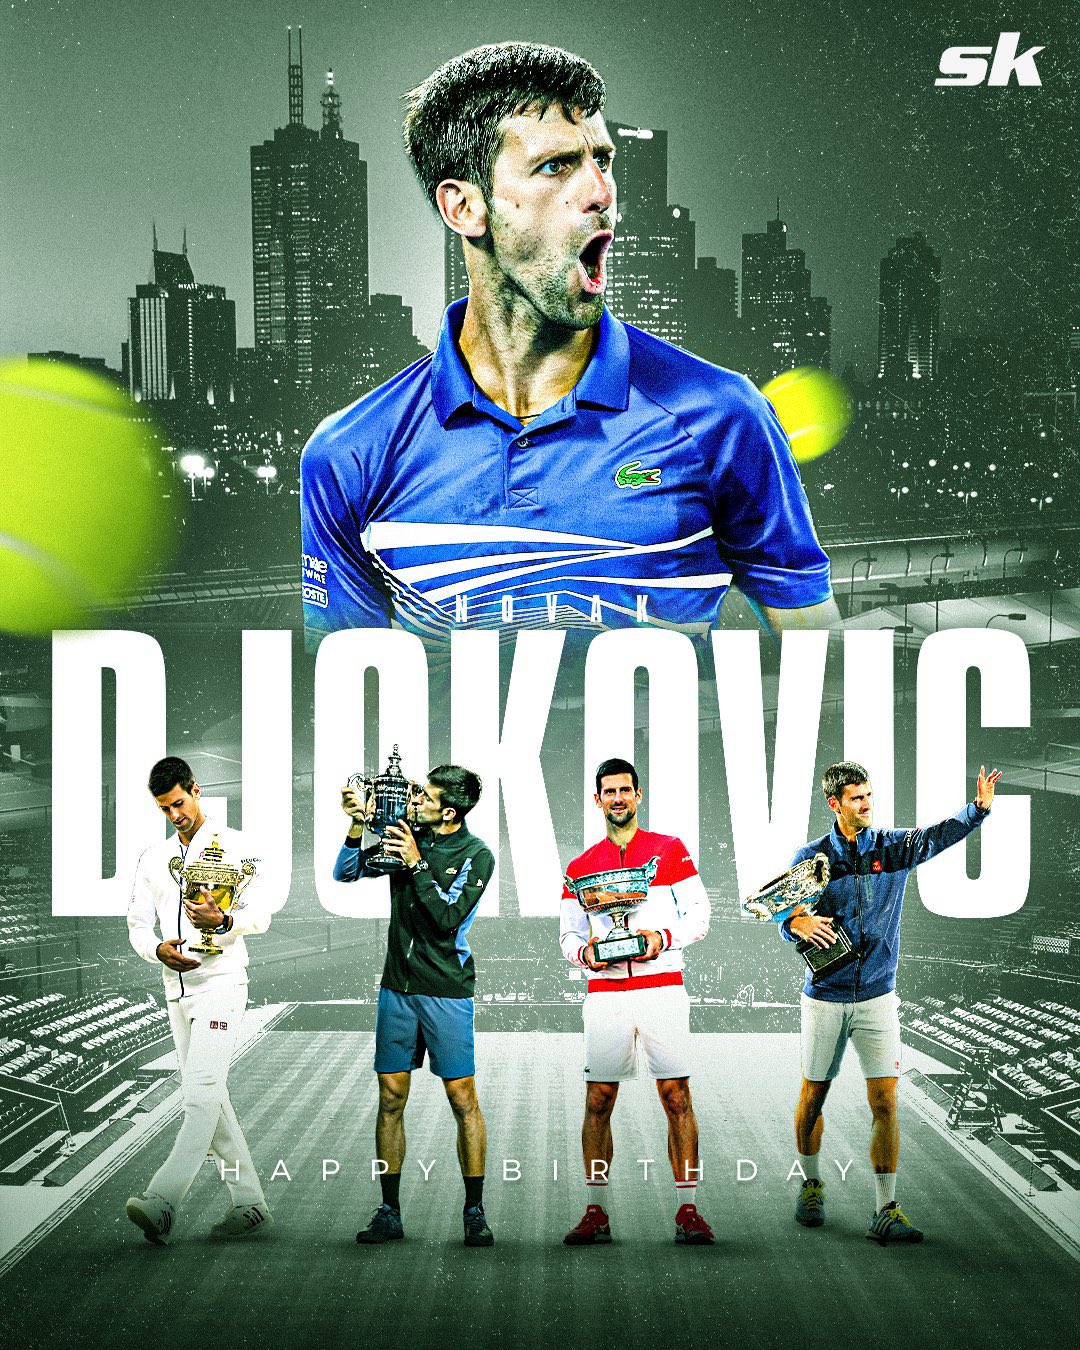 Happy Birthday, Mr 20 Grand Slam No.1 in World Right Now
Novak Djokovic  